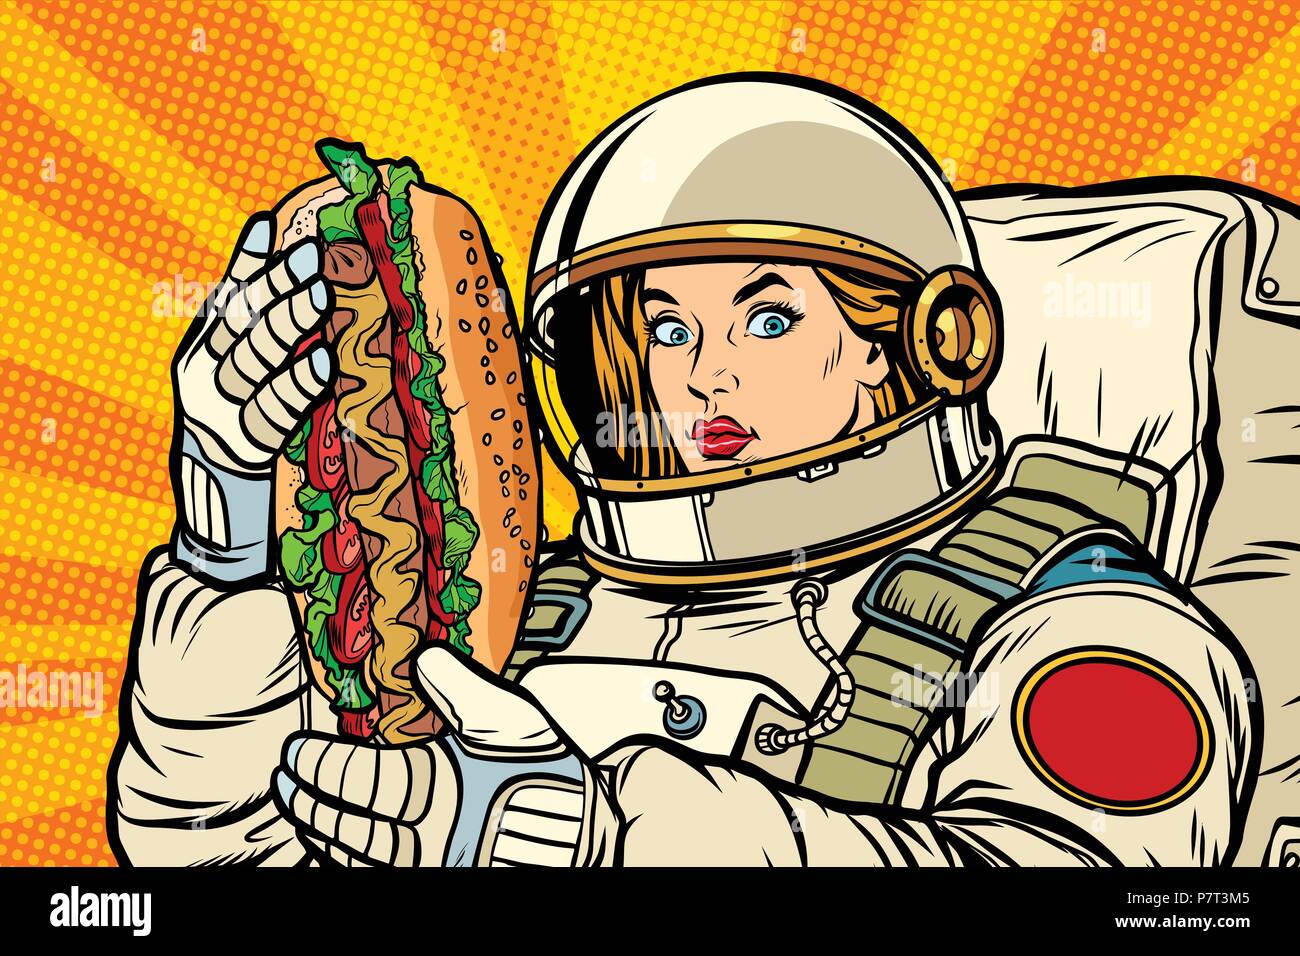 Hambre mujer astronauta con hot dog. Pop art ilustración vector vintage retro kitsch dibujo Ilustración del Vector